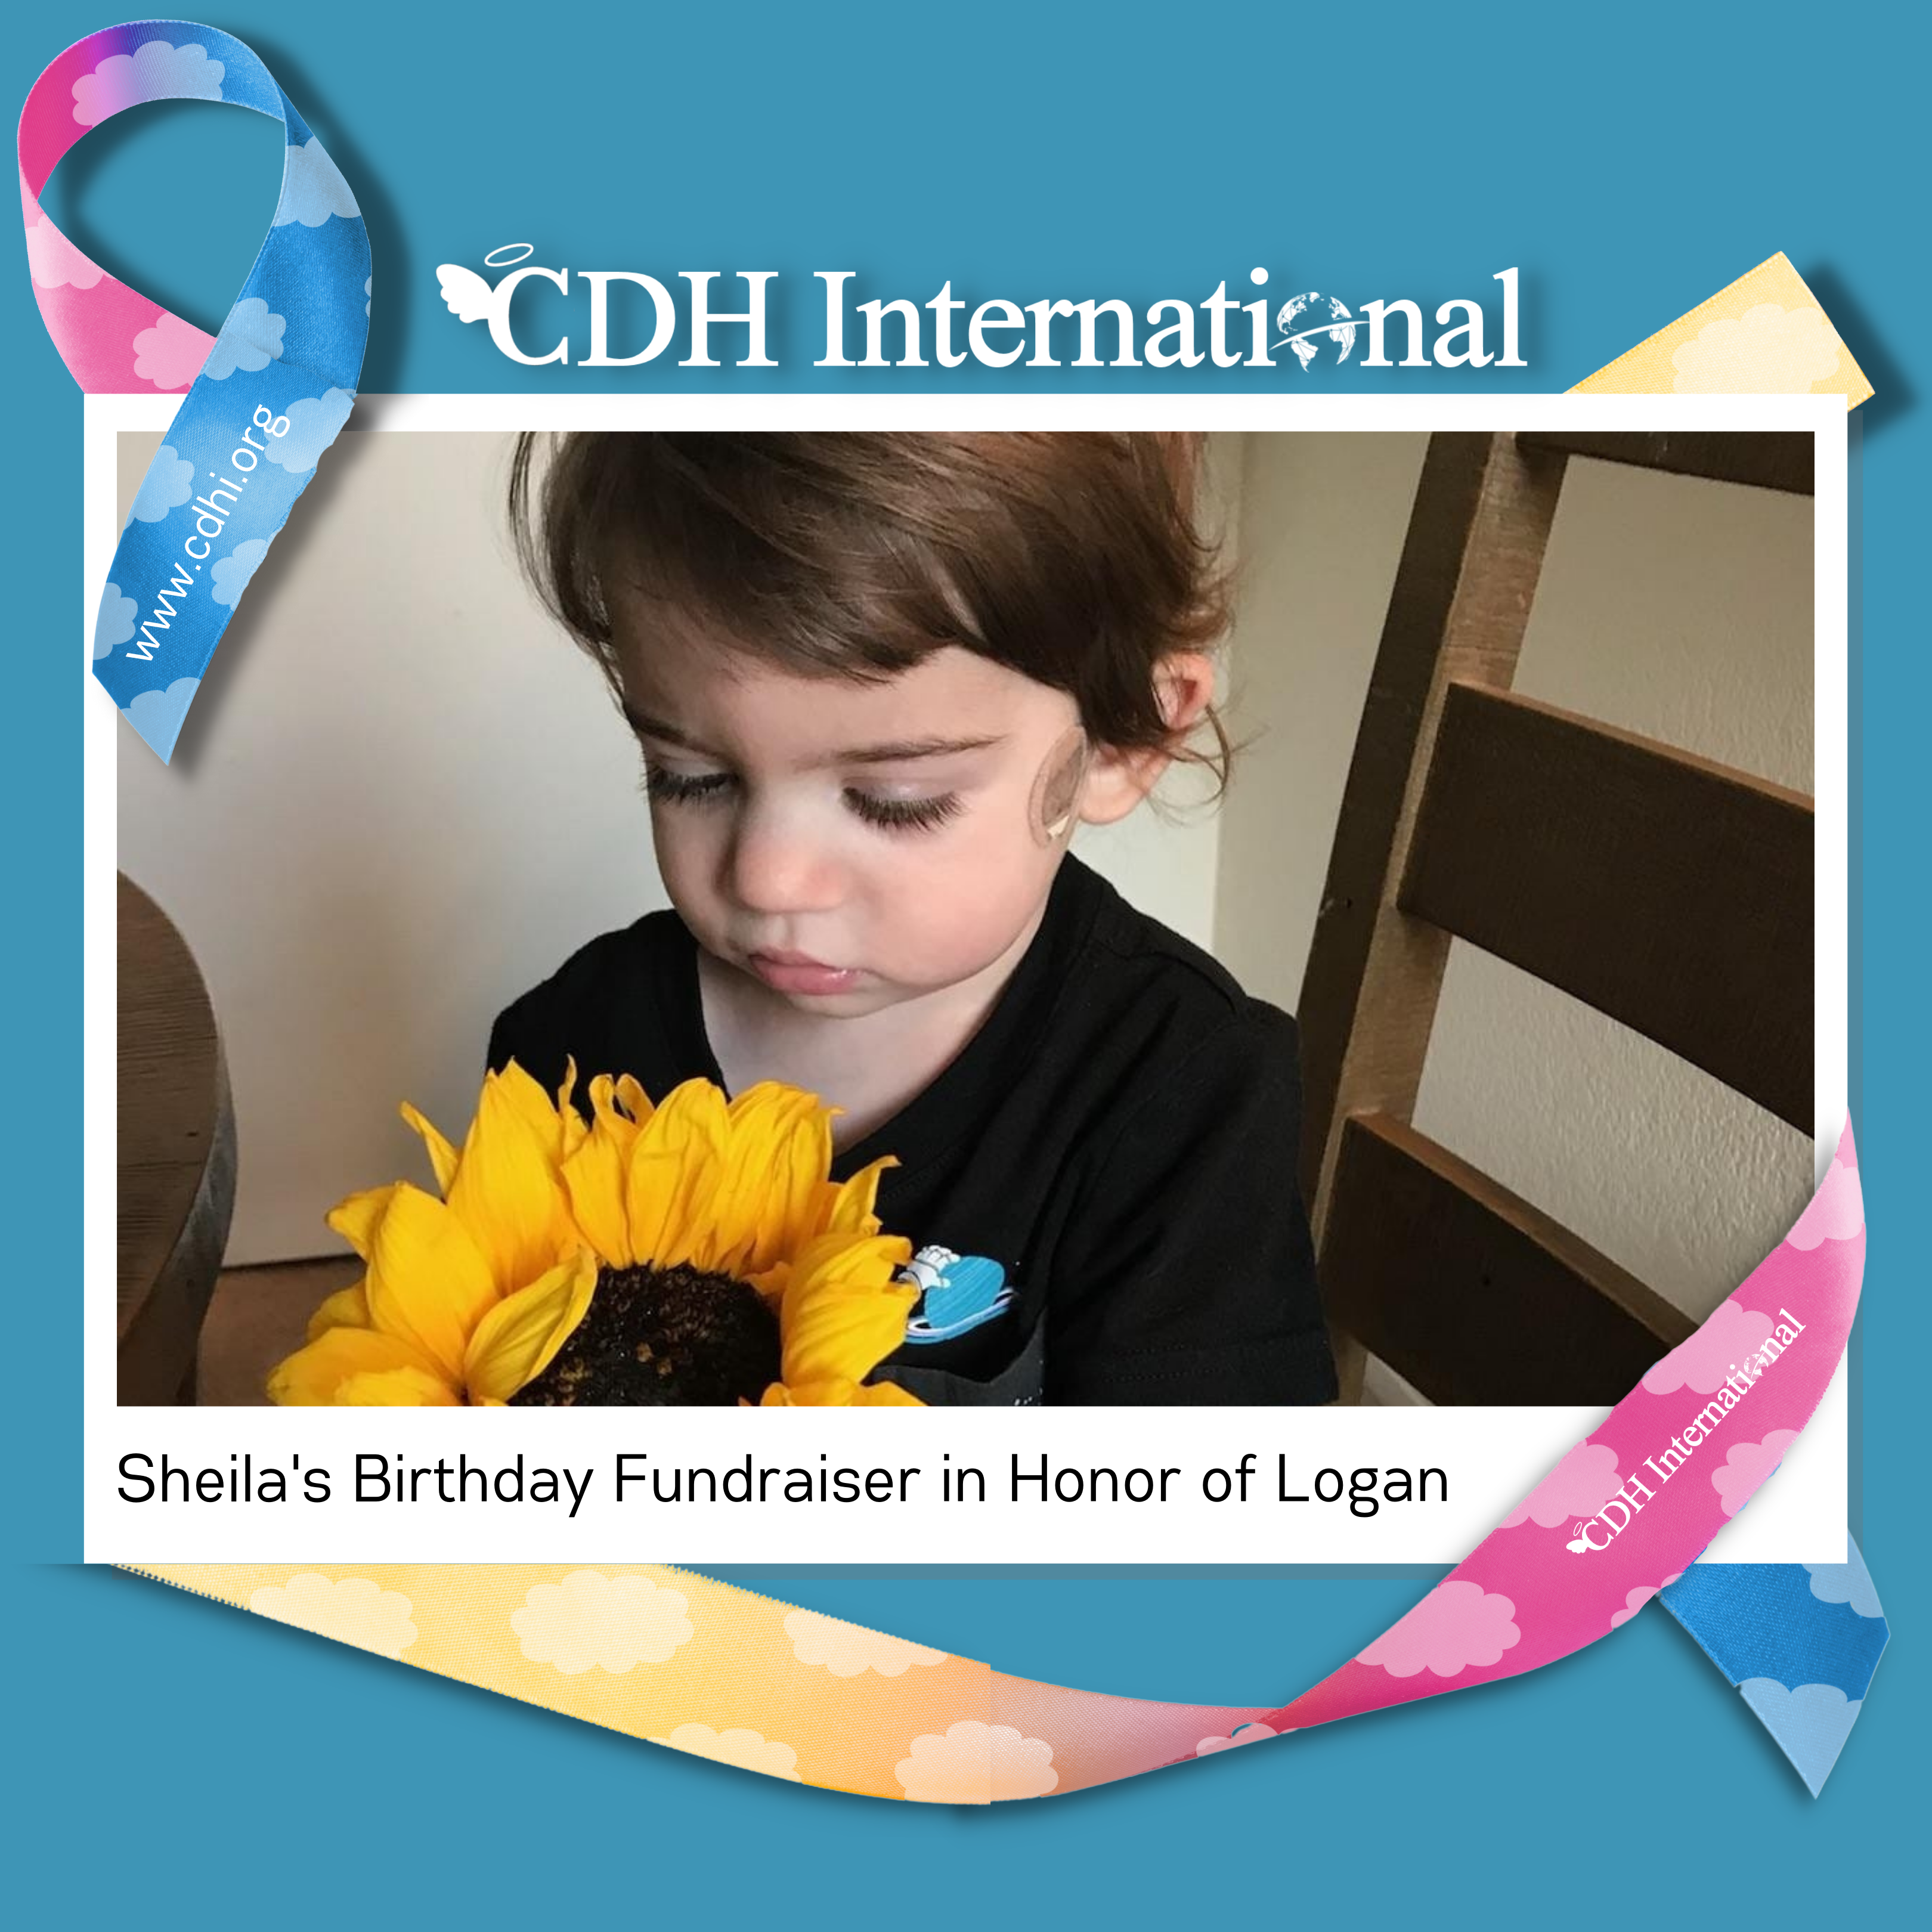 Linda’s Birthday Fundraiser for CDHi in Honor of Grandson Jack